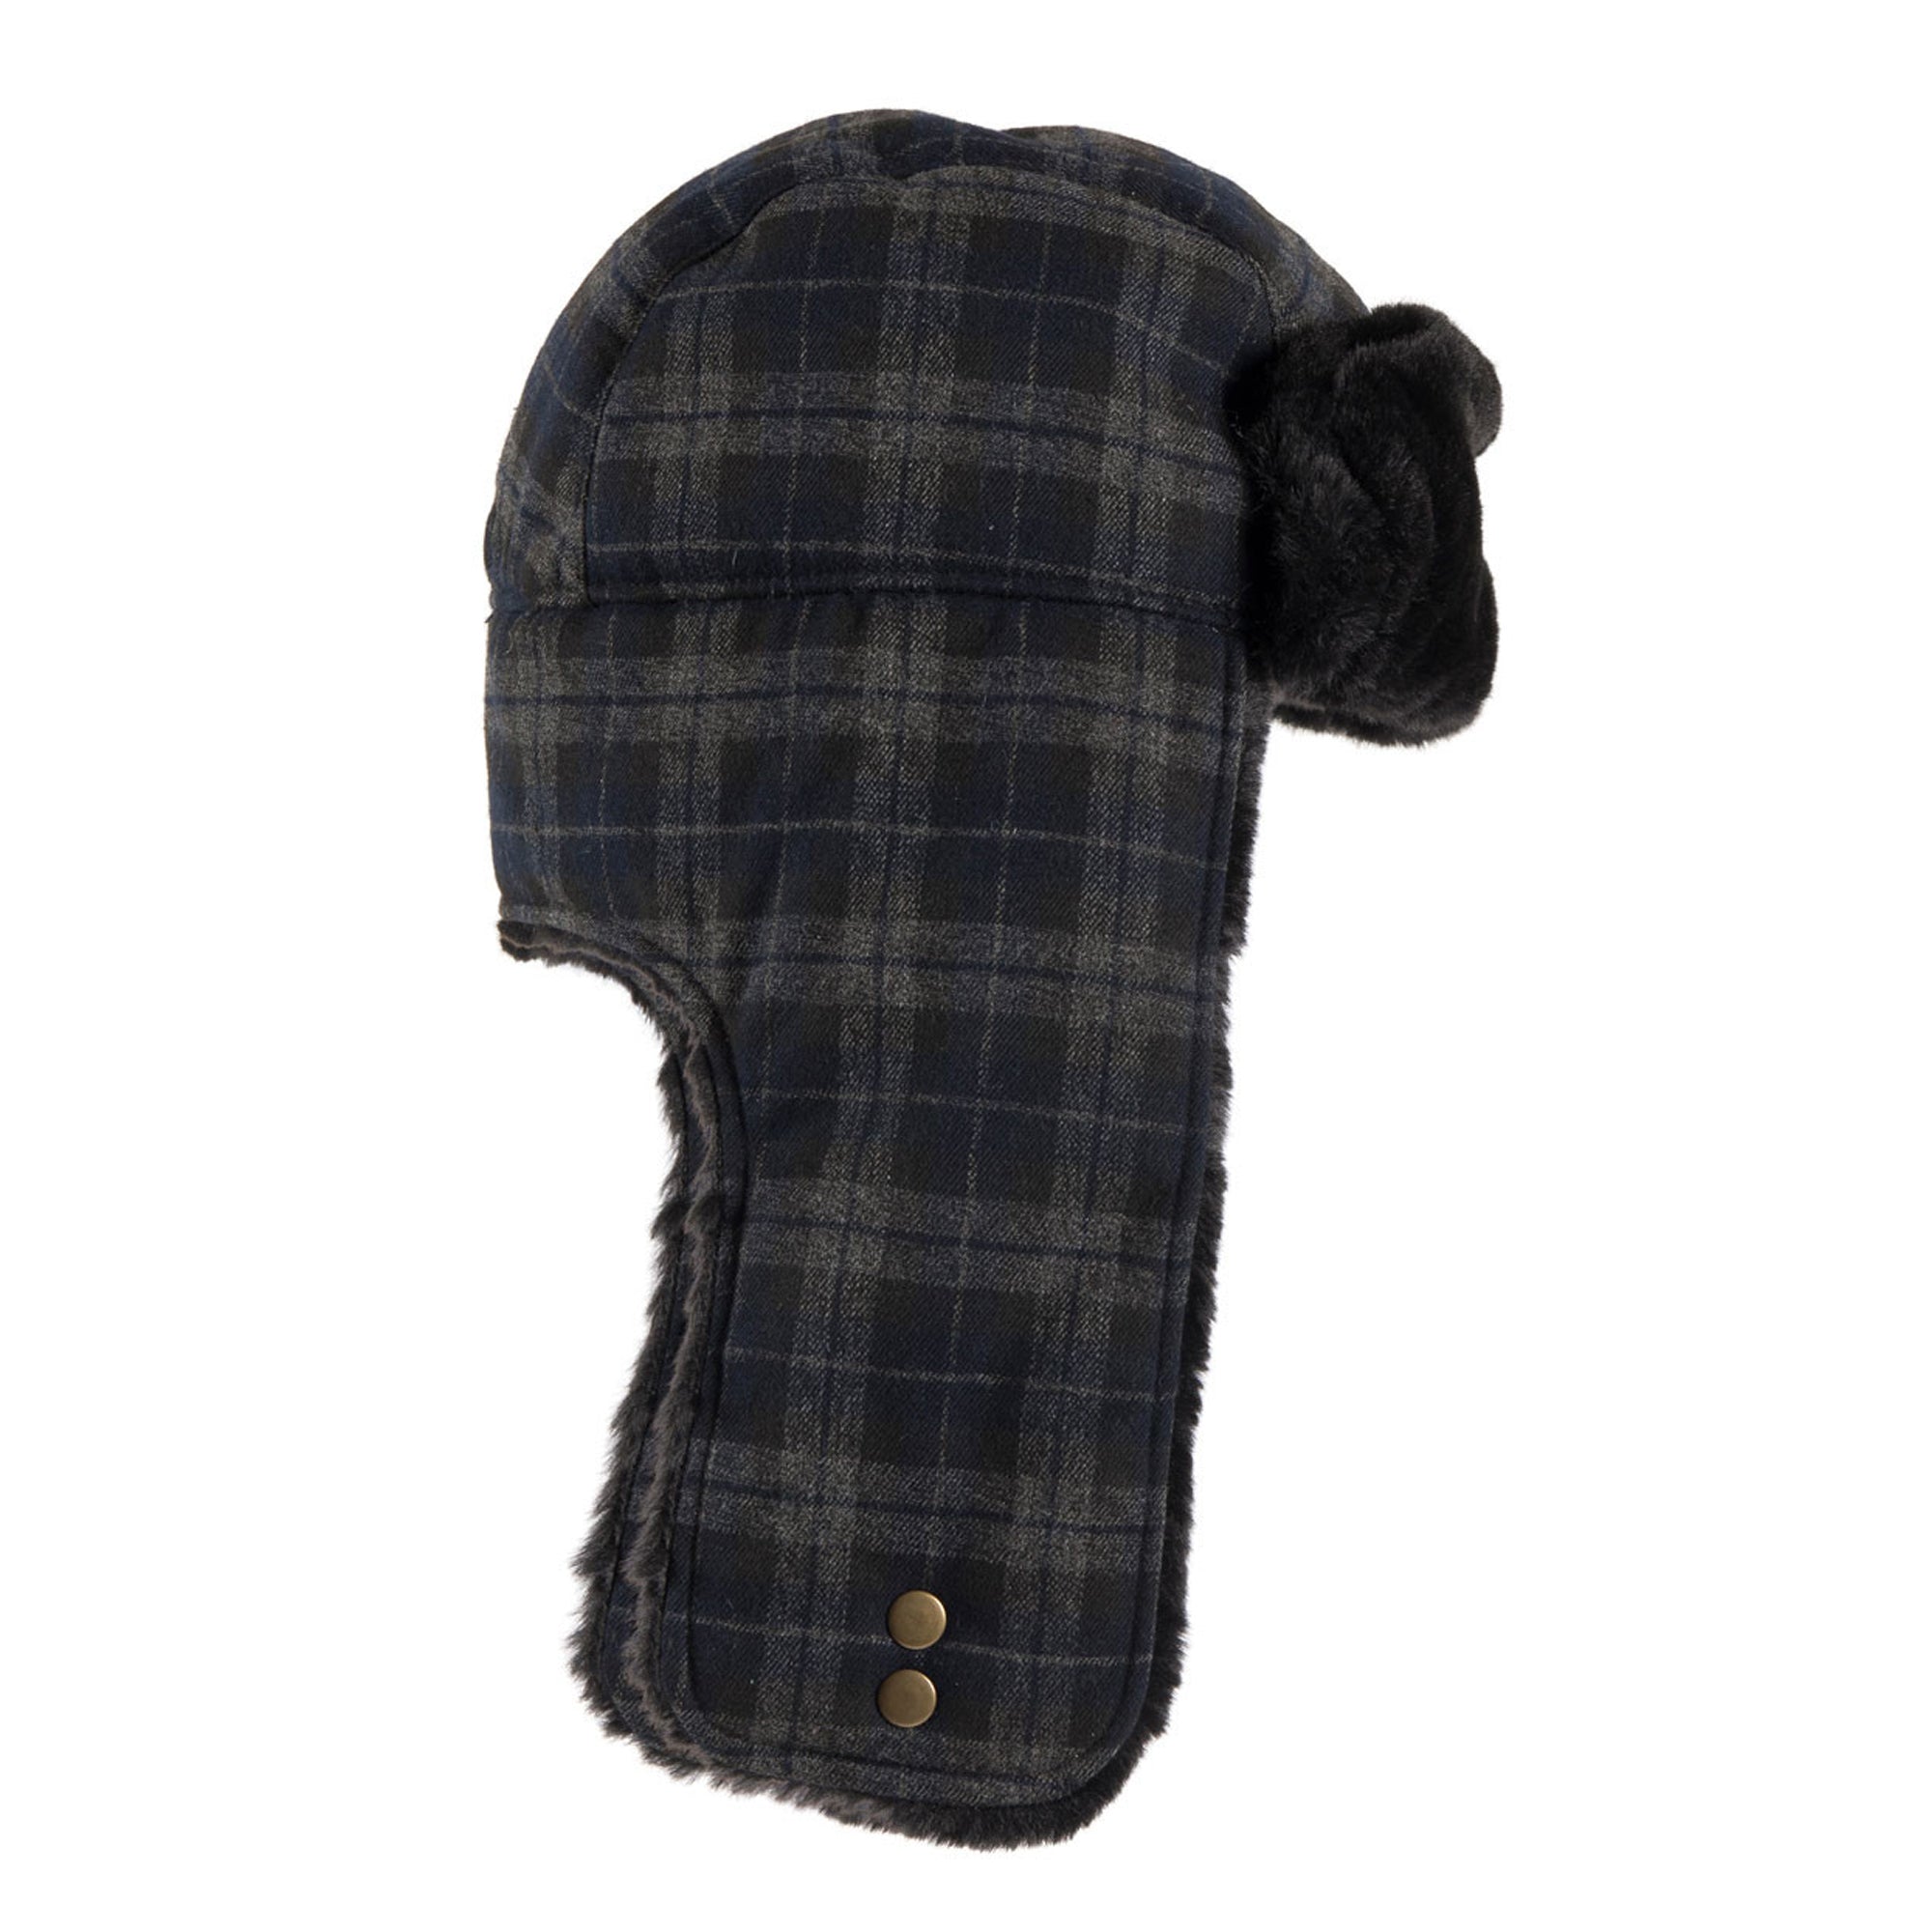 509  Trapper Hat Warm Long Faux Fur Earflaps Adjustable Snap Closure Winter Cap